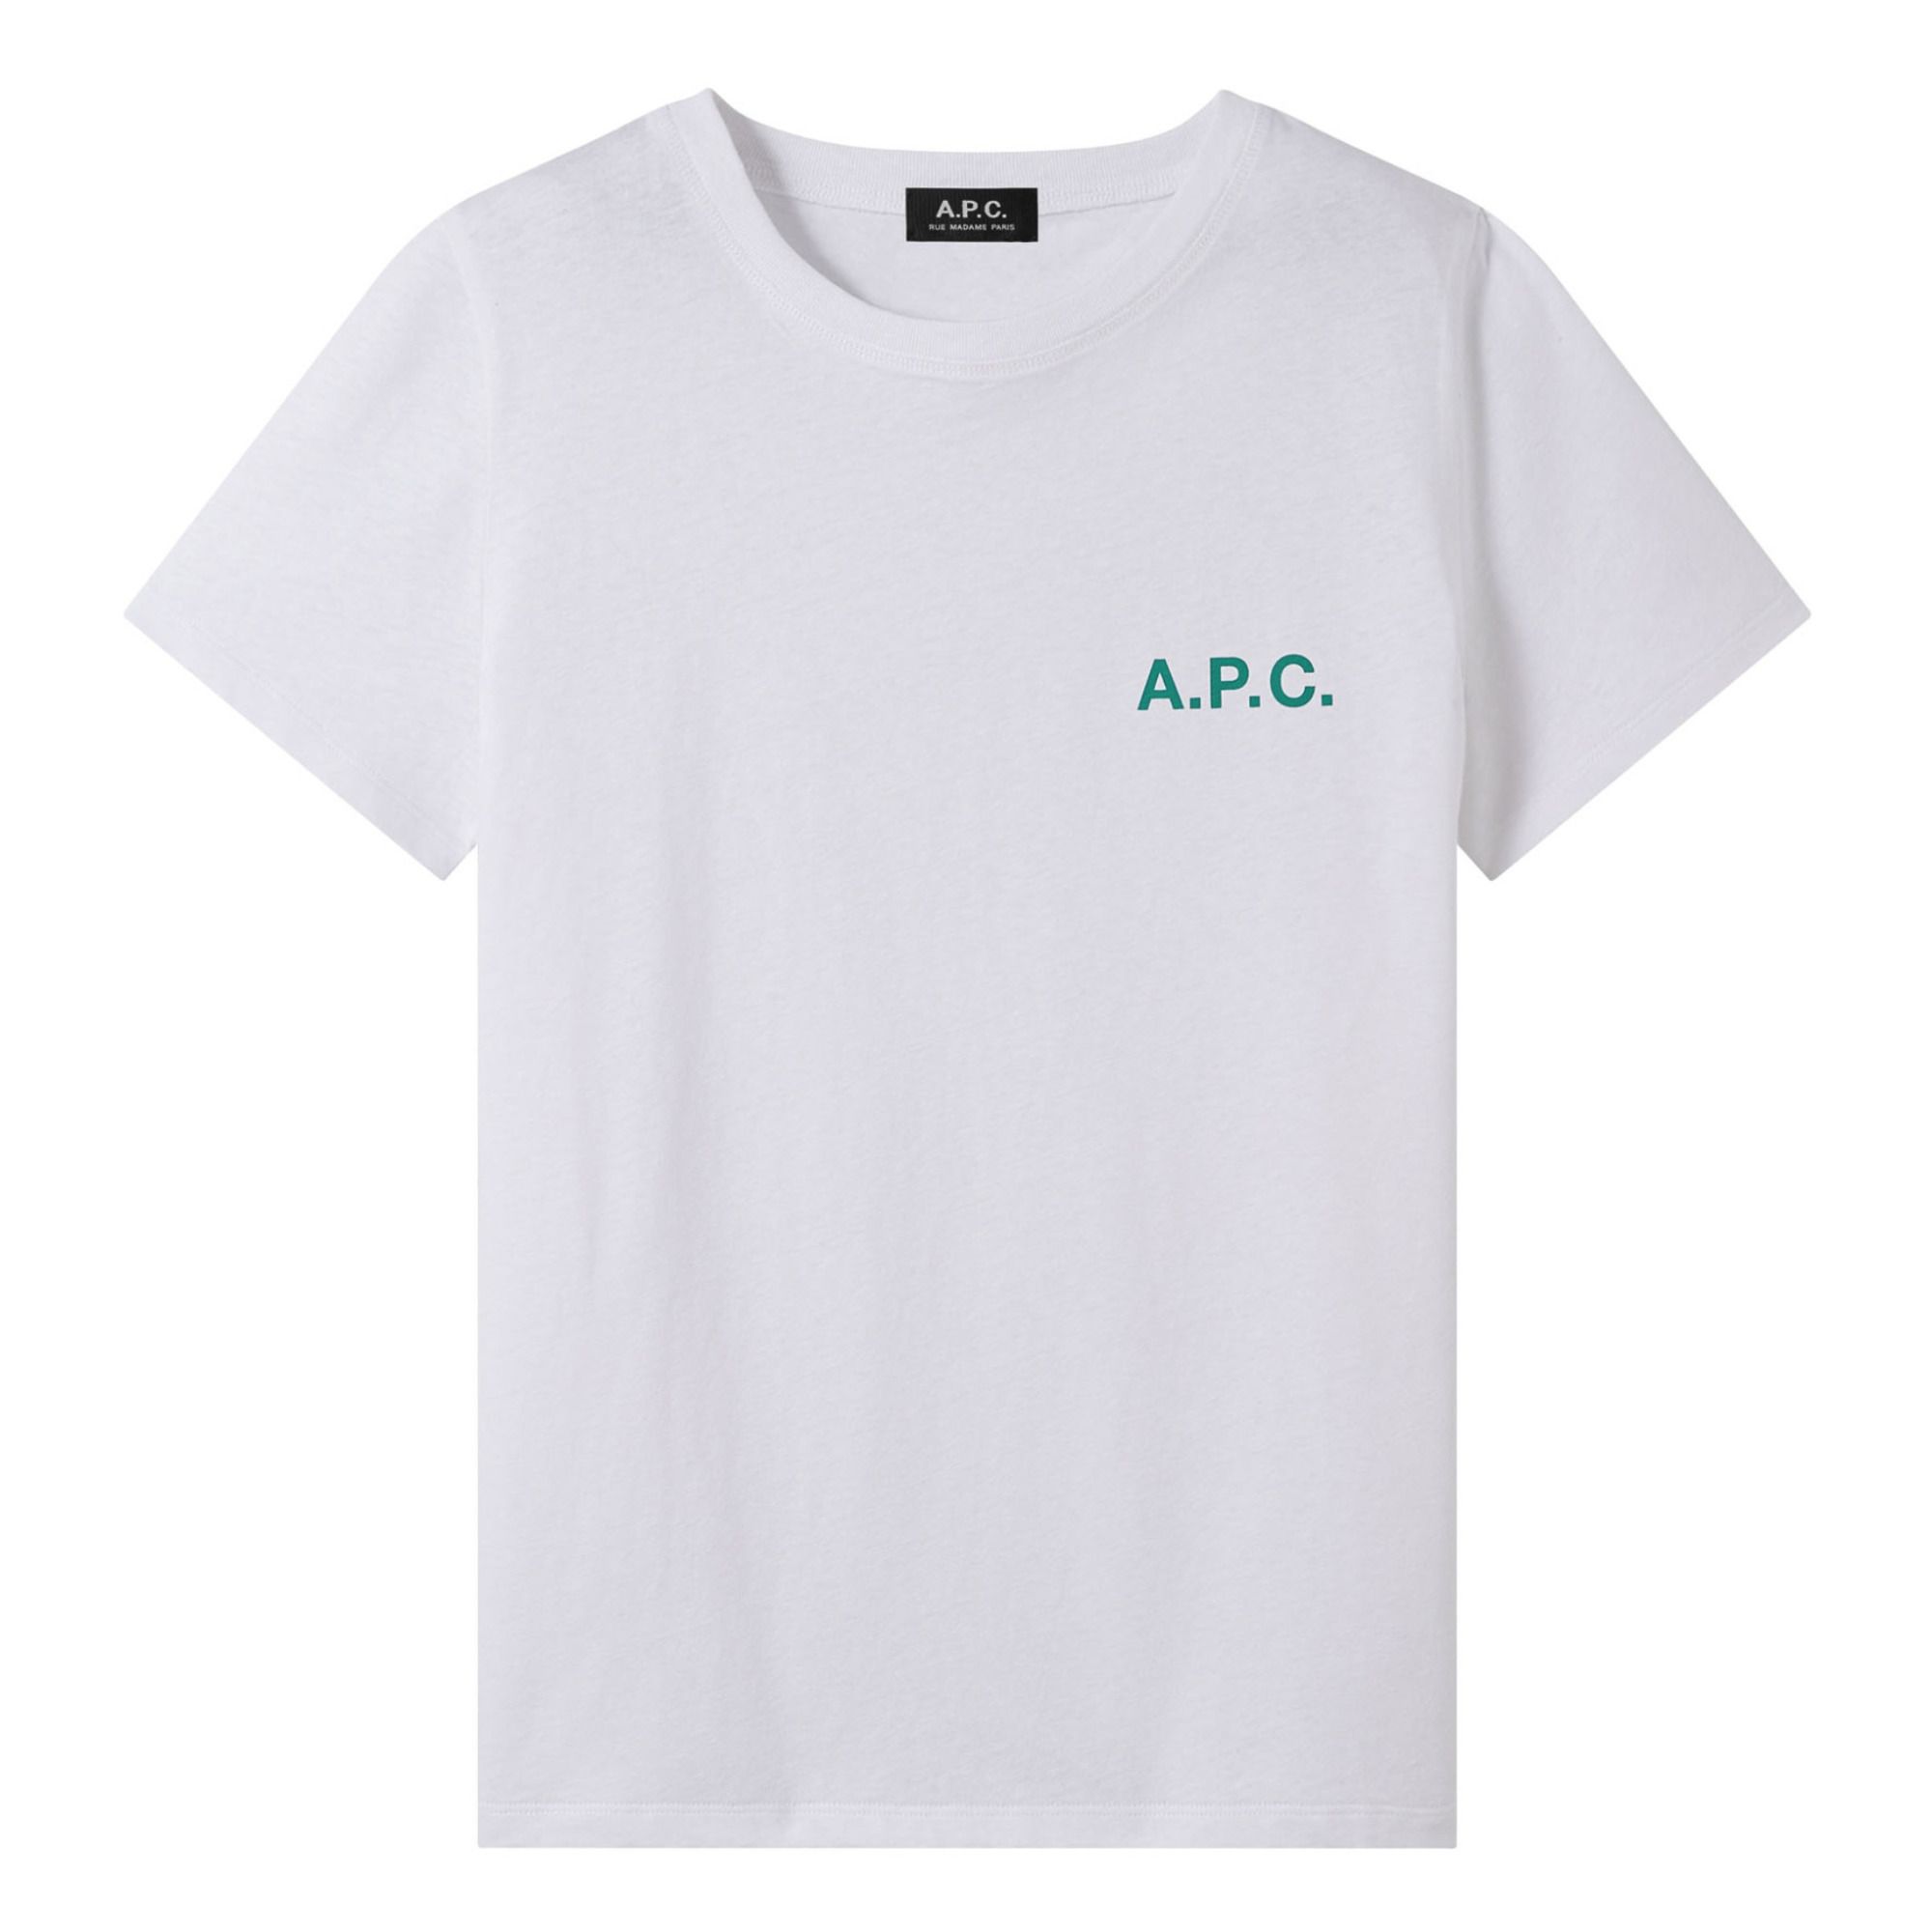 A.P.C. - T-shirt Leanne Coton Bio - Femme - Blanc